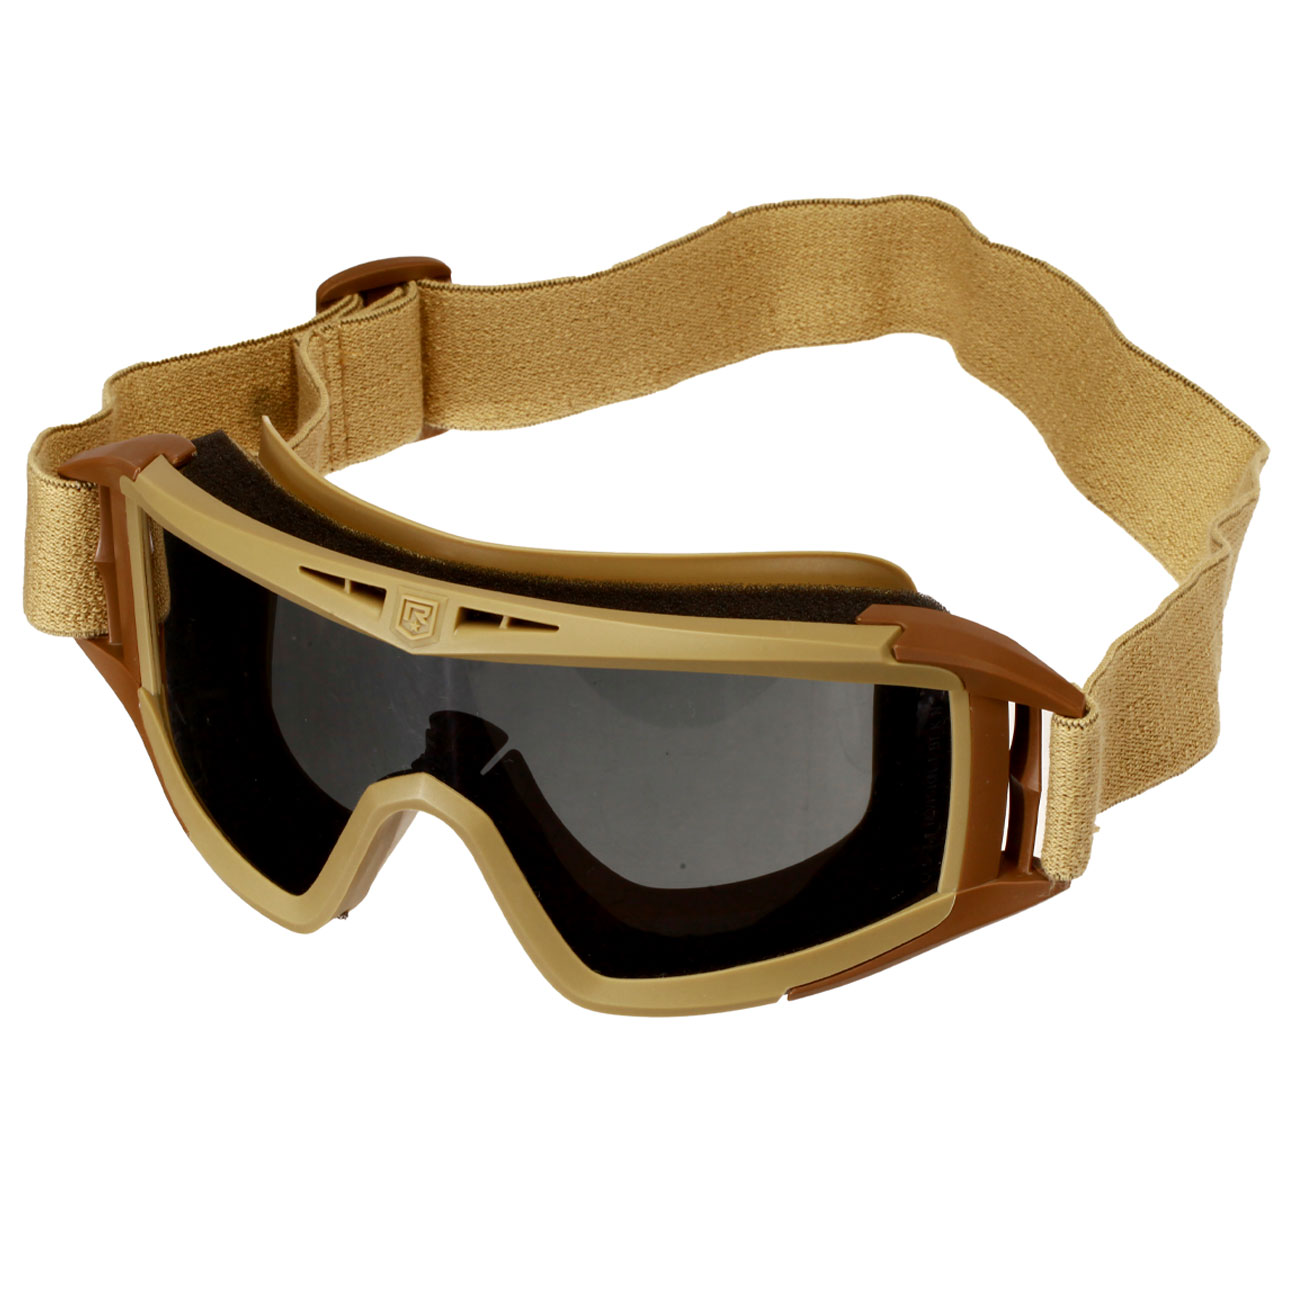 Revision Eyewear Desert Locust Schutzbrille Deluxe Kit mit vermillion / klar / rauch Wechselglser tan Bild 1